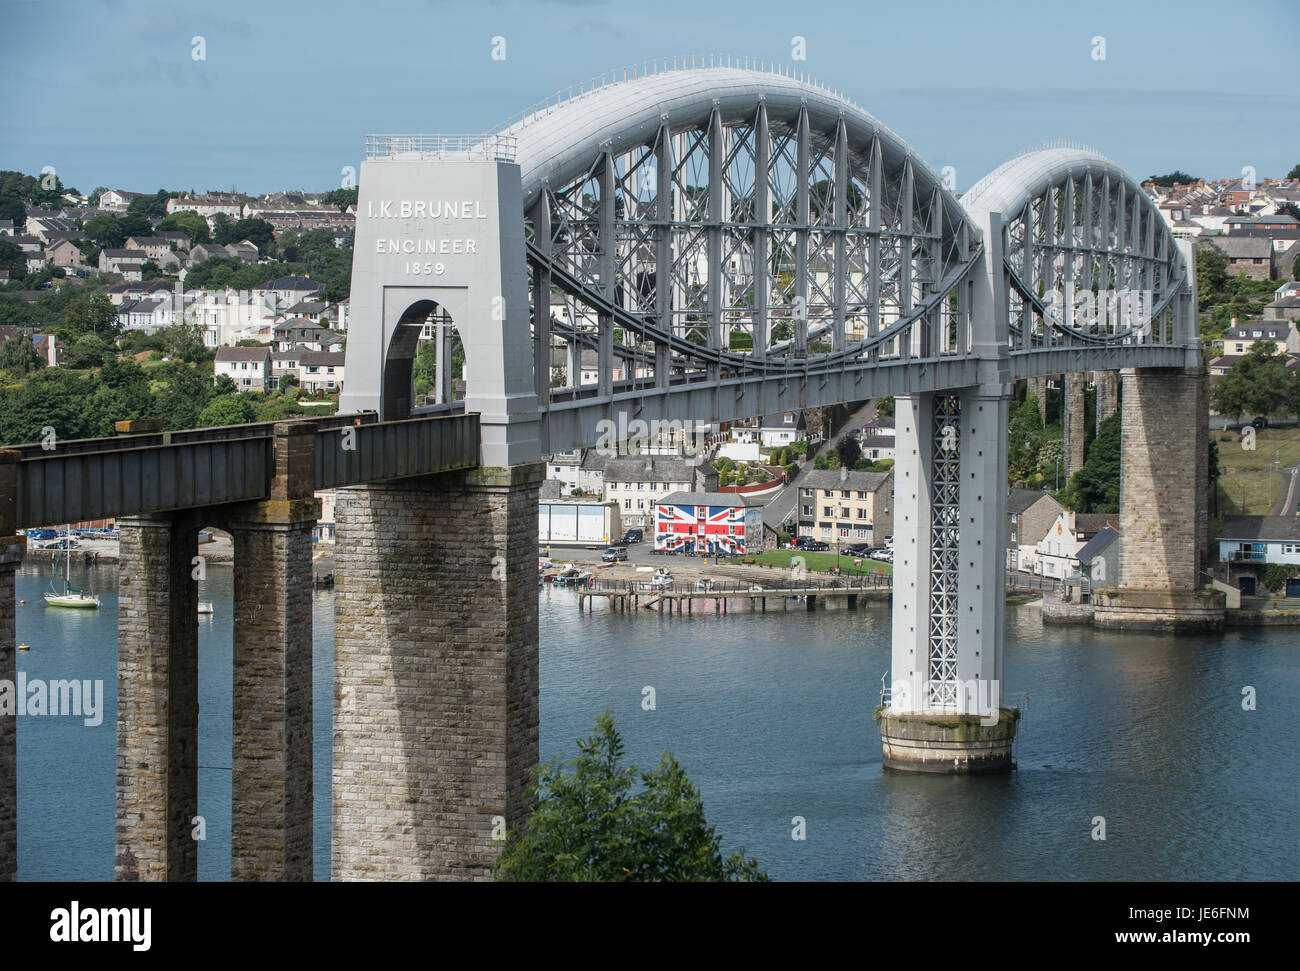 Bild von Paul Slater/PSI - Royal Albert Bridge oder Brunel Bridge zwischen Devon und Cornwall Plymouth und Saltash über den Tamar River. Stockfoto